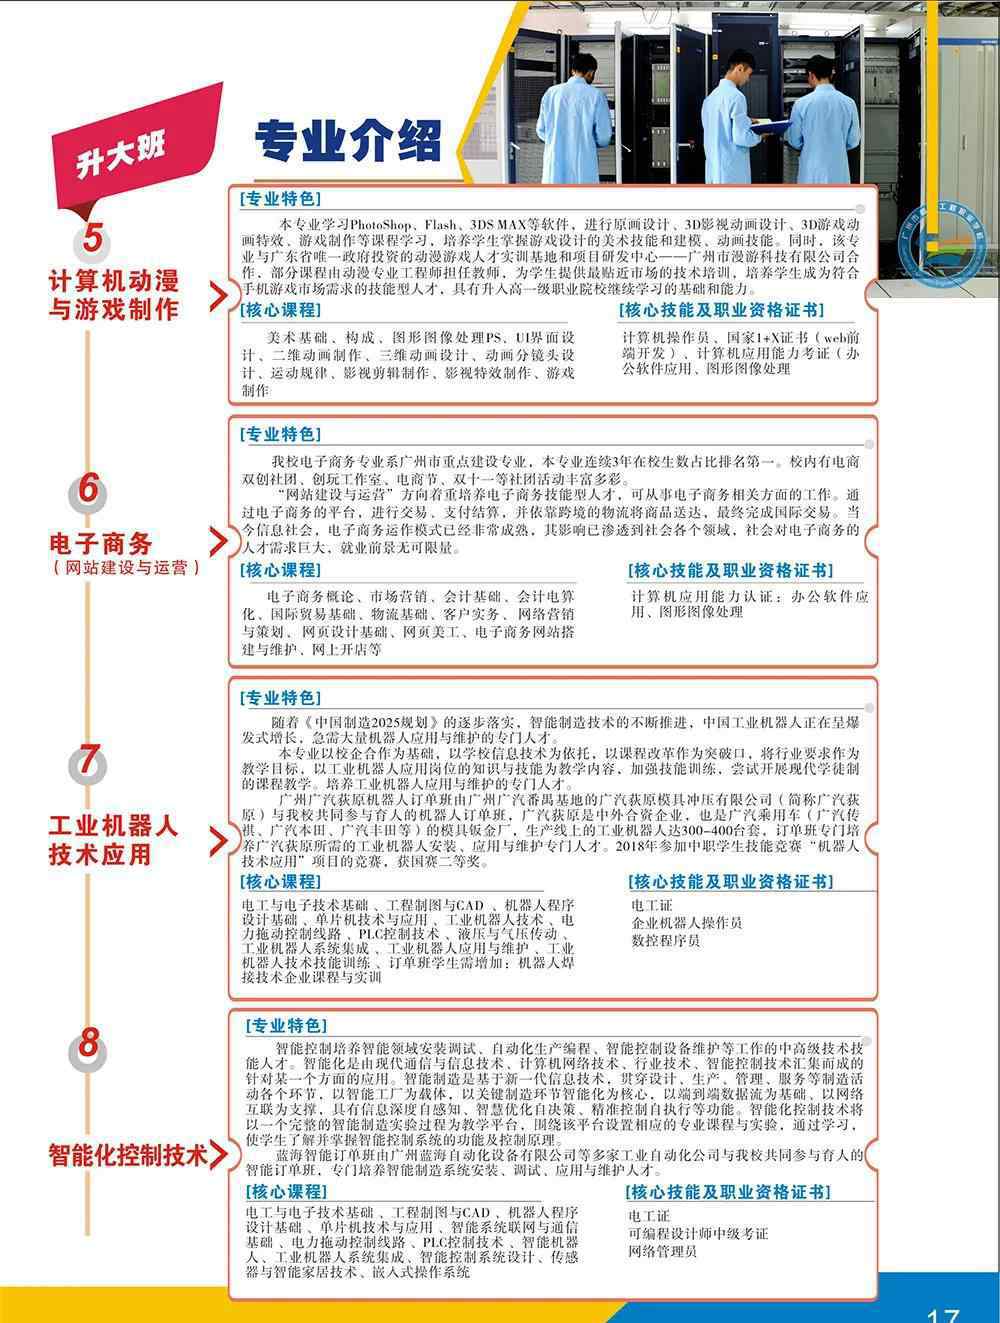 广州信息工程职业学校 广州市信息工程职业学校2020年招生简章